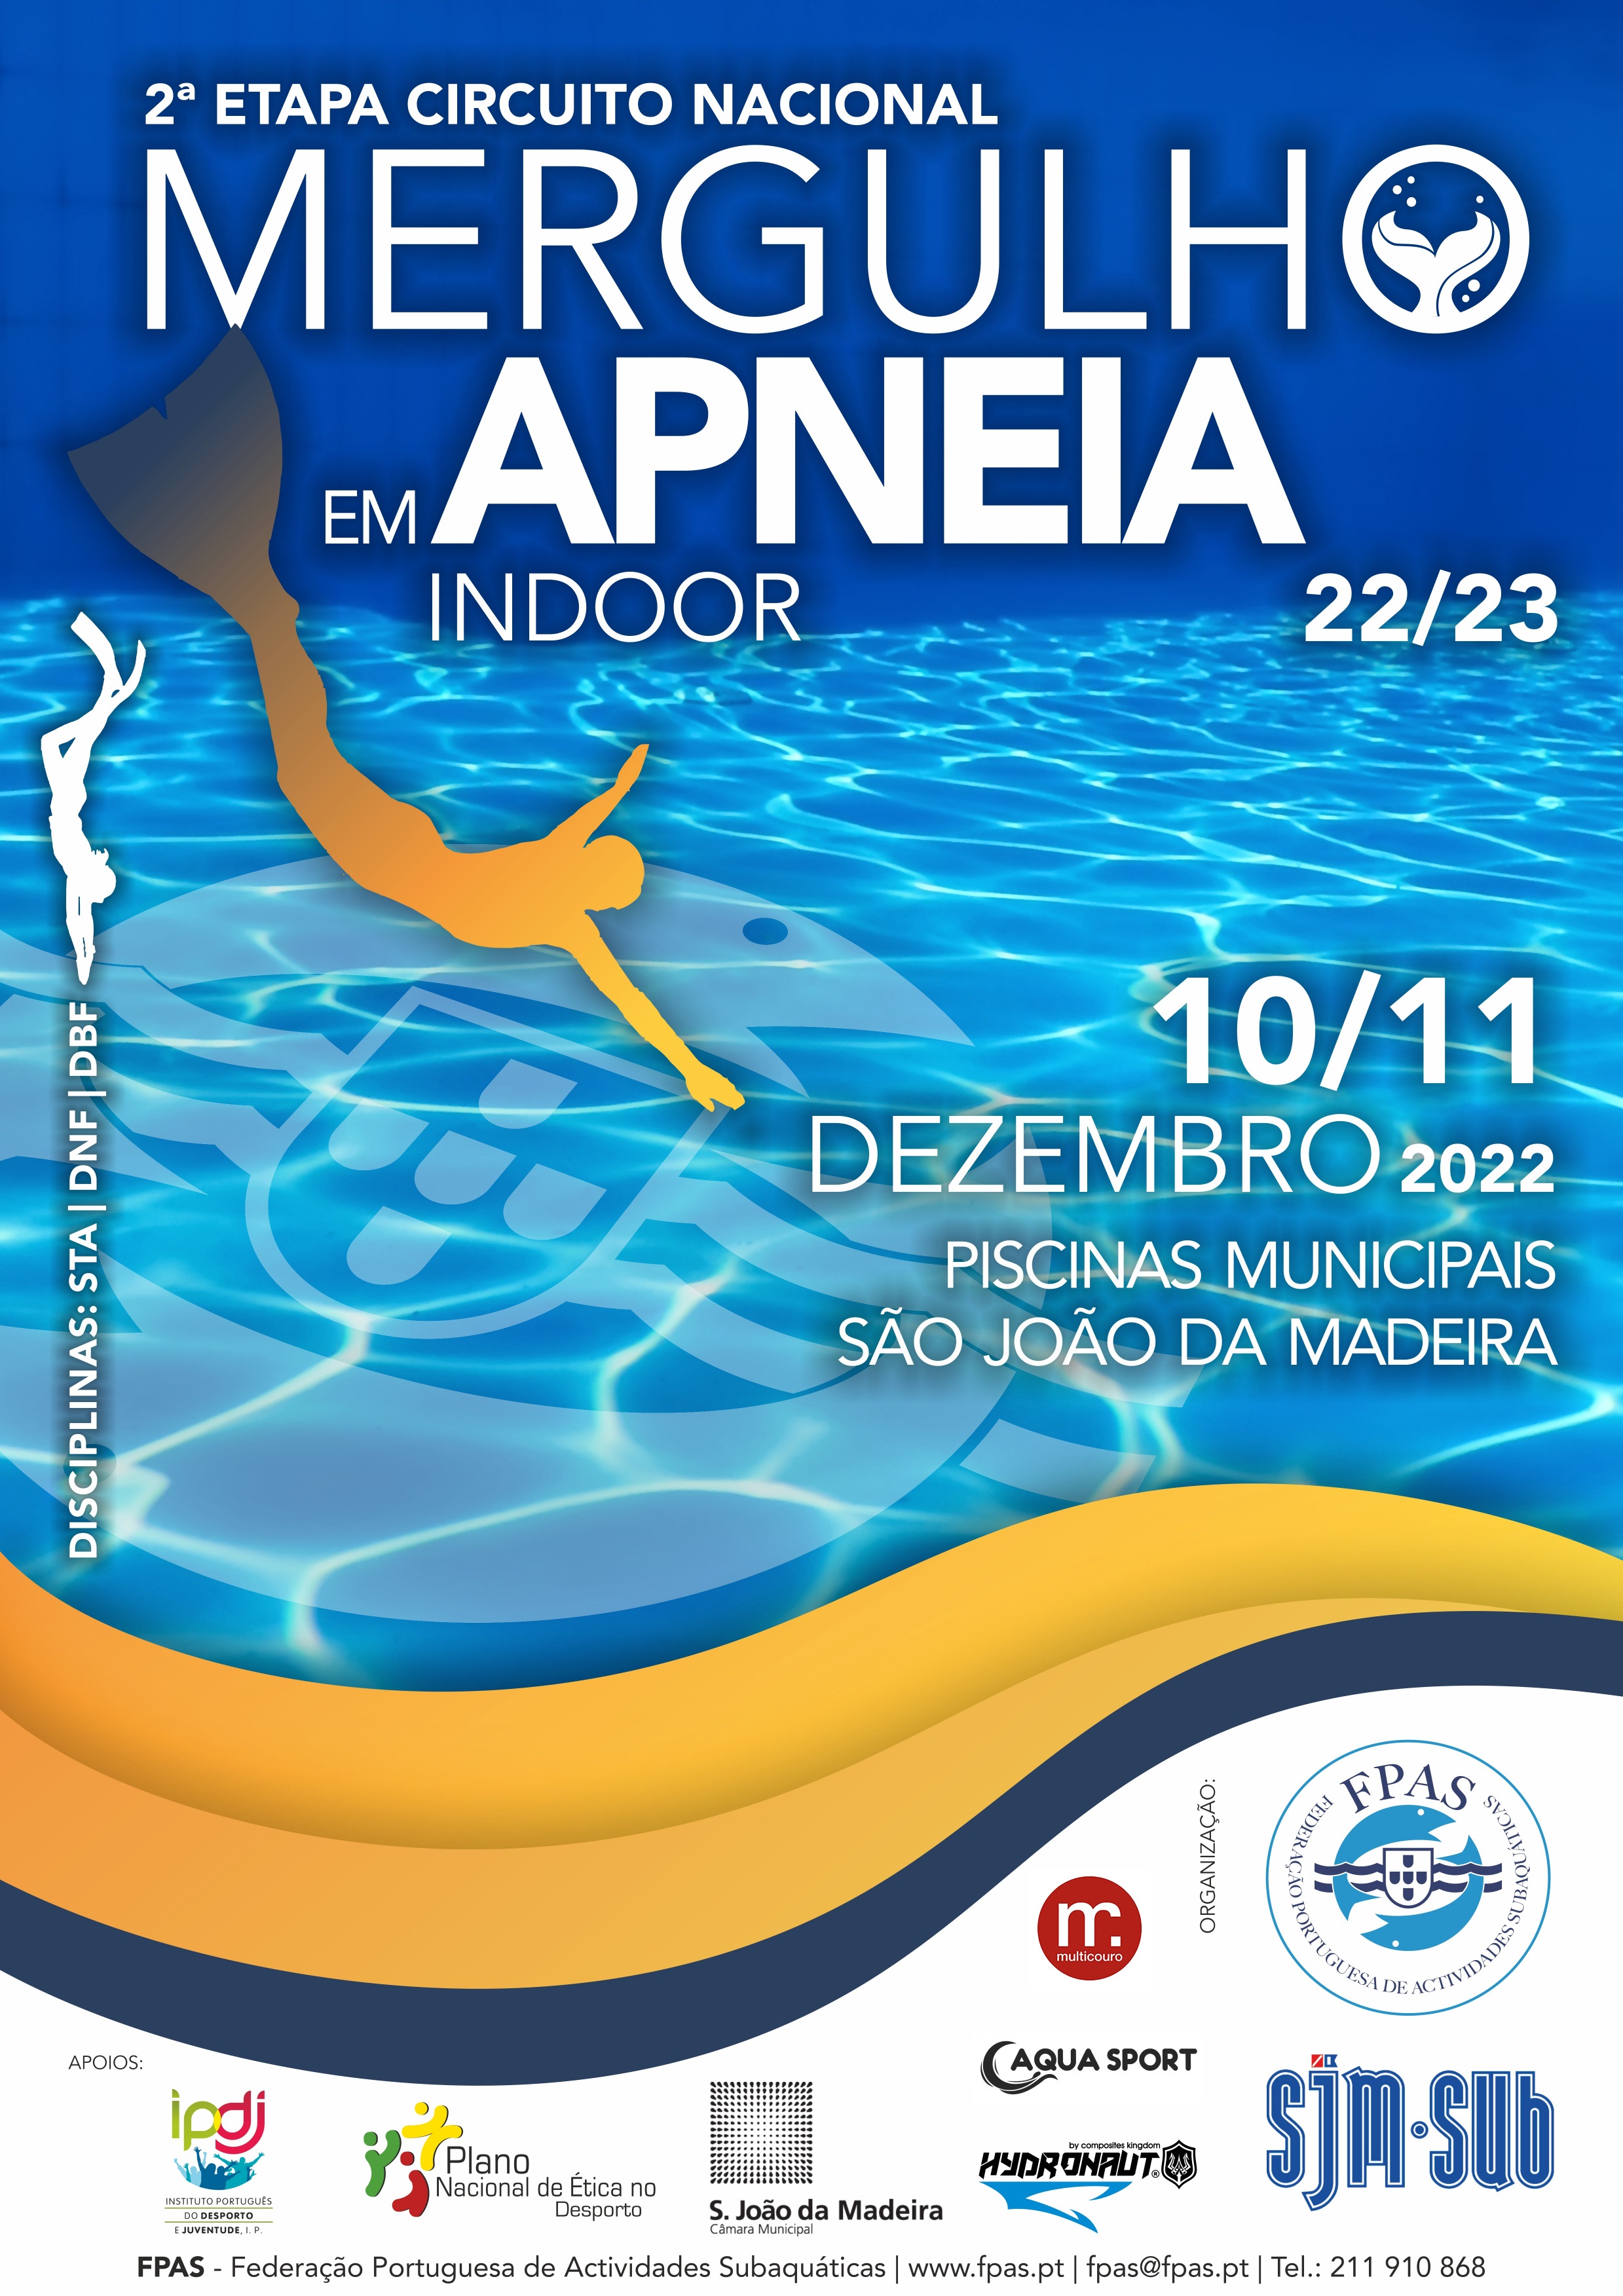 Circuito Nacional de Mergulho em Apneia INDOOR 2022/2023 - 2ª Etapa